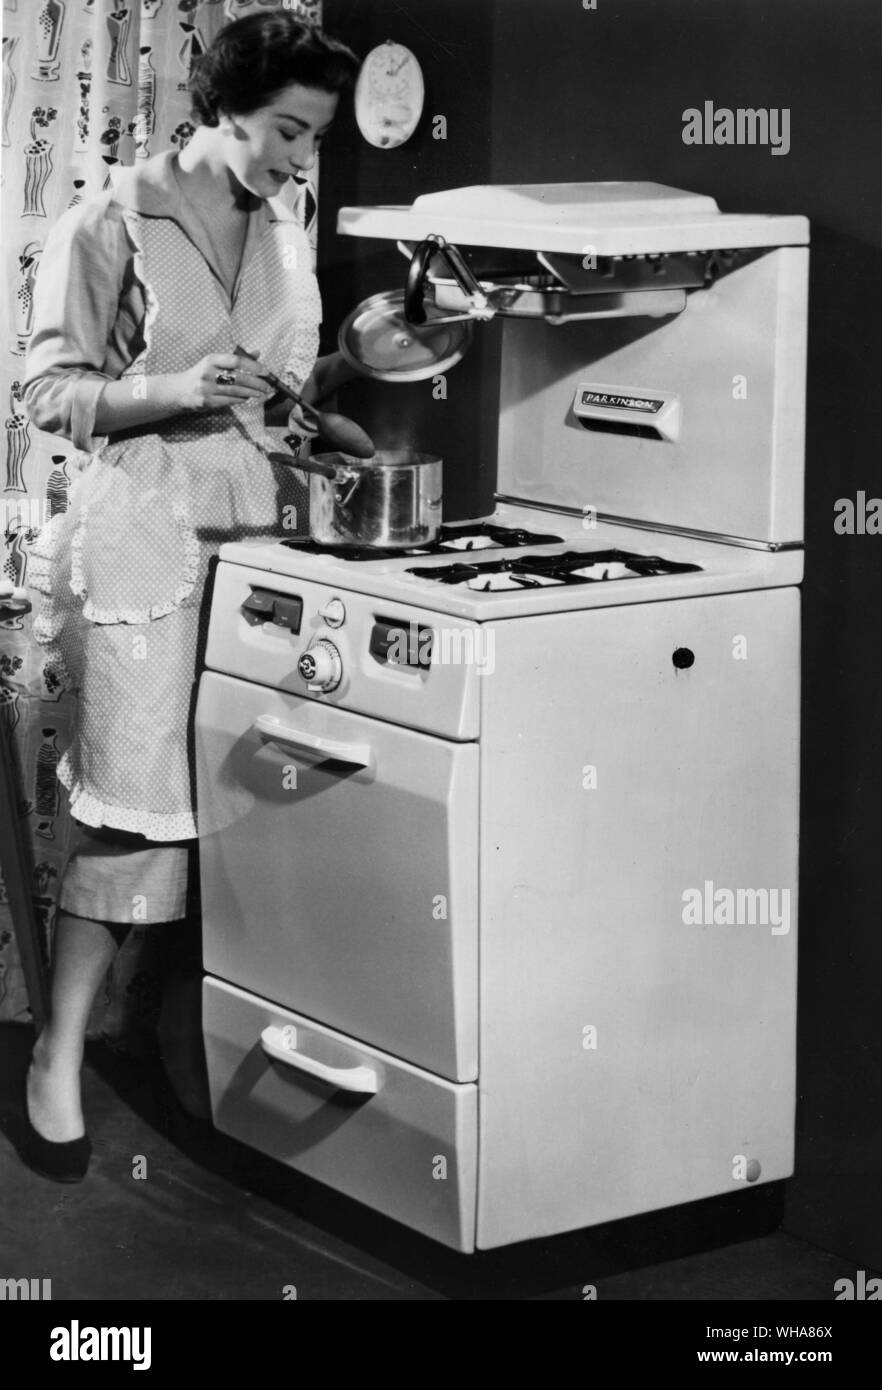 La cuisine femme sur une cuisinière à gaz Banque D'Images